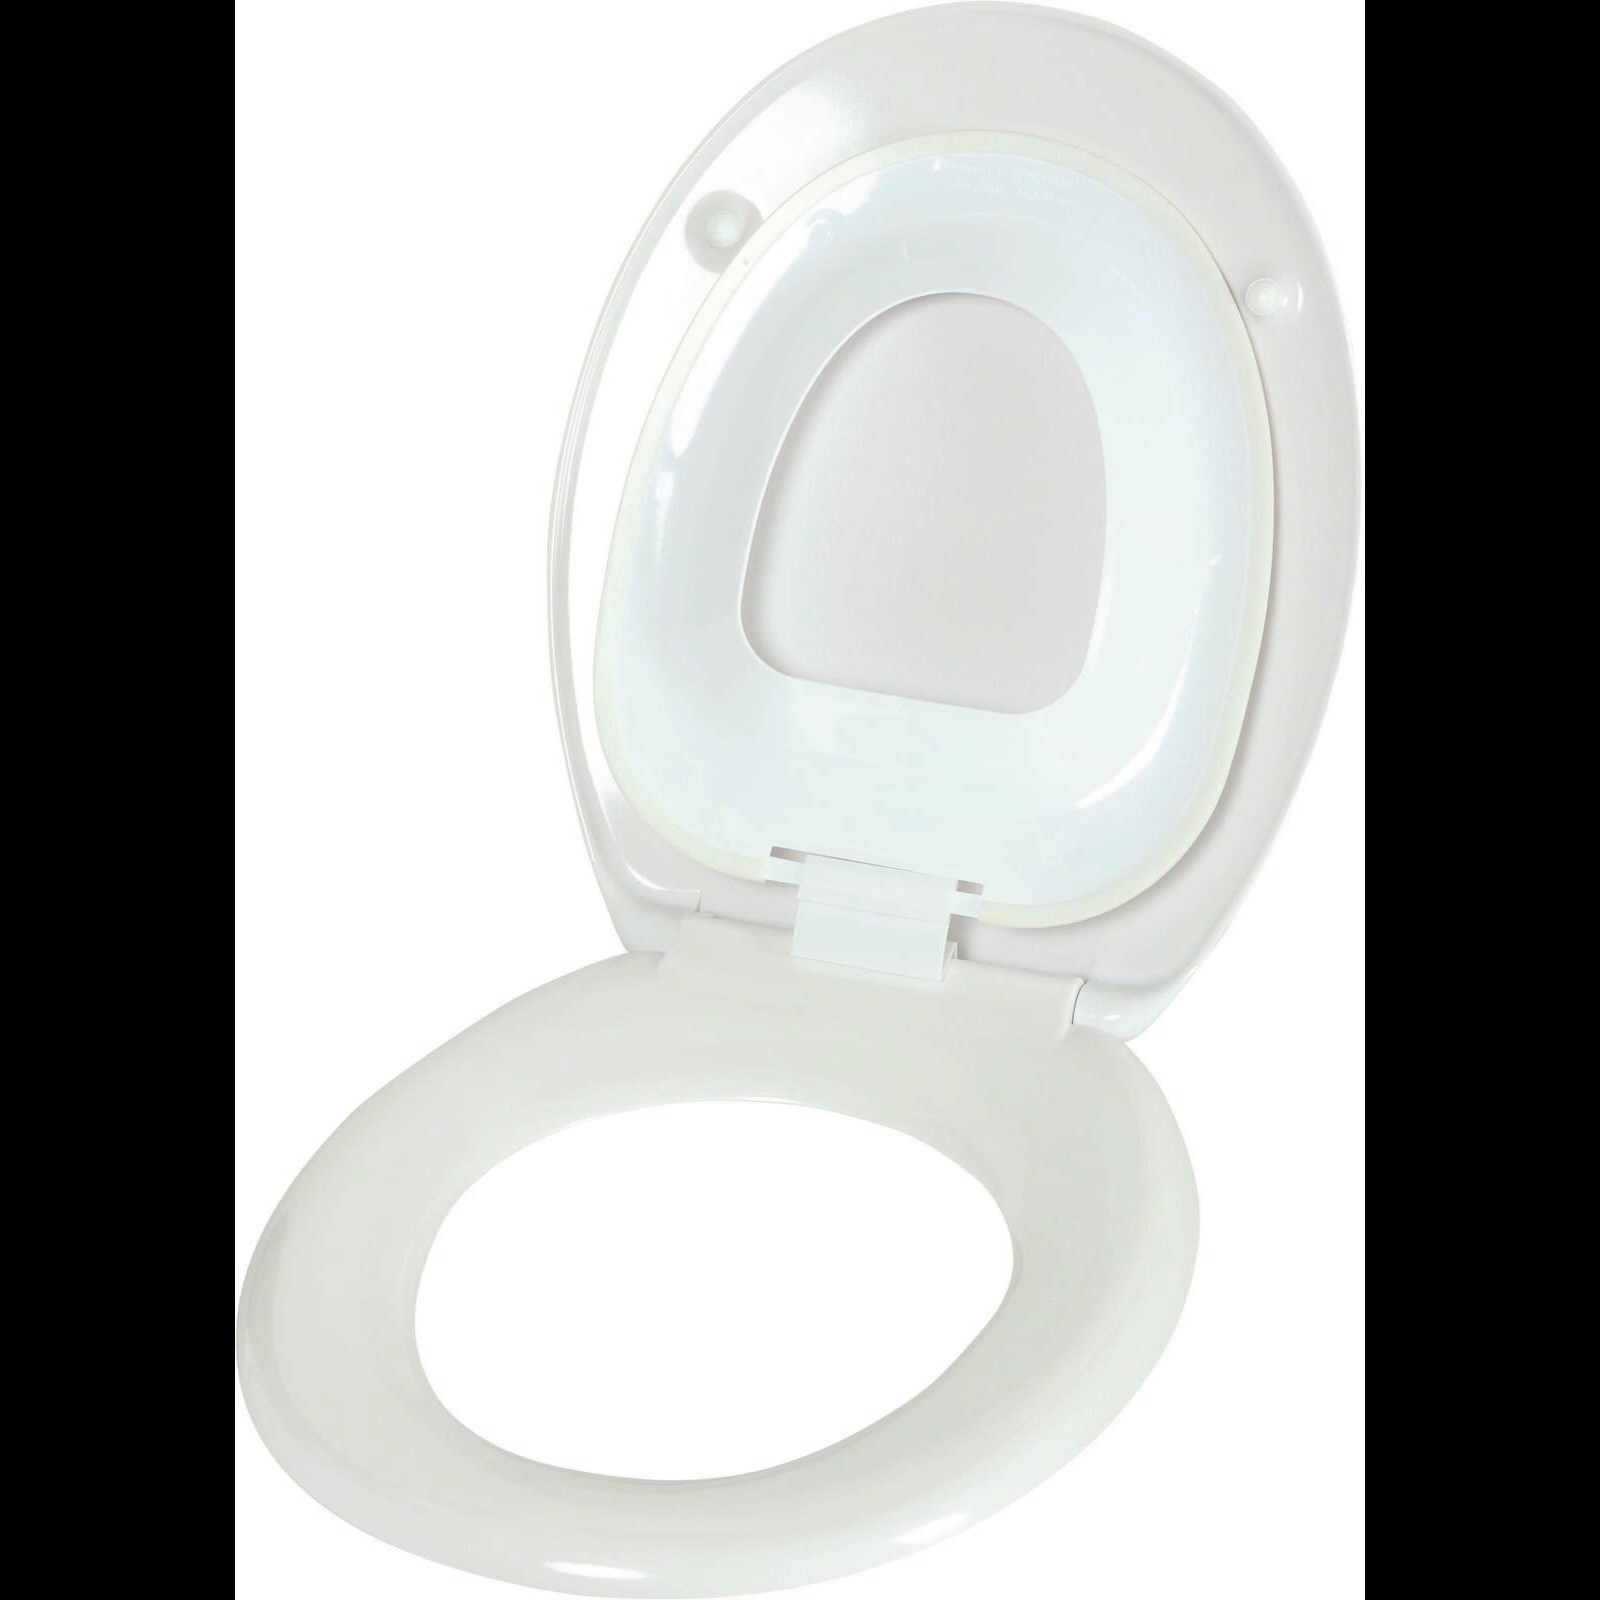 Couvercle WC blanc Acheter - Accessoires salles de bain - LANDI